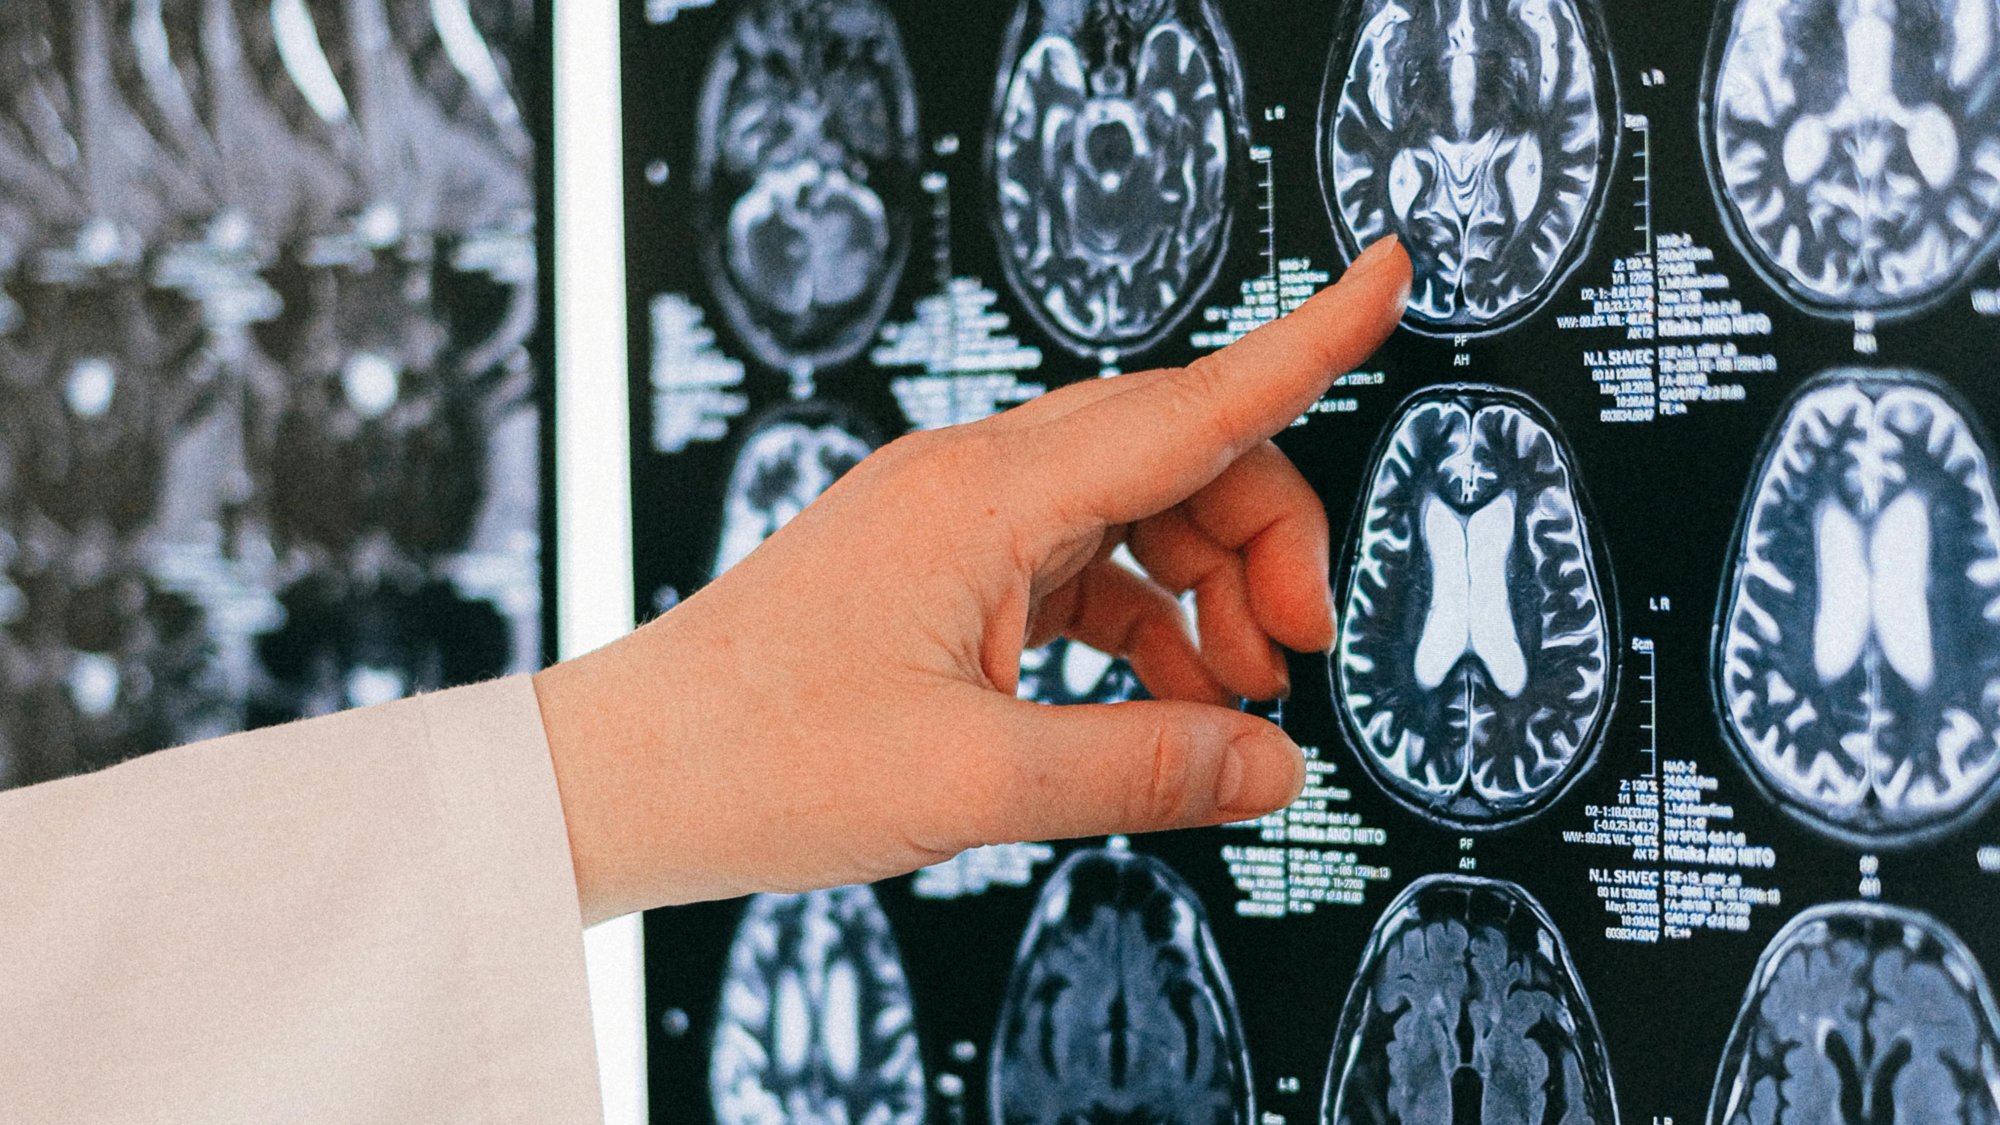 Καναδάς: Ανησυχία για μυστηριώδη ασθένεια του εγκεφάλου – Επιστήμονες καταγγέλλουν απαγόρευση μελέτης